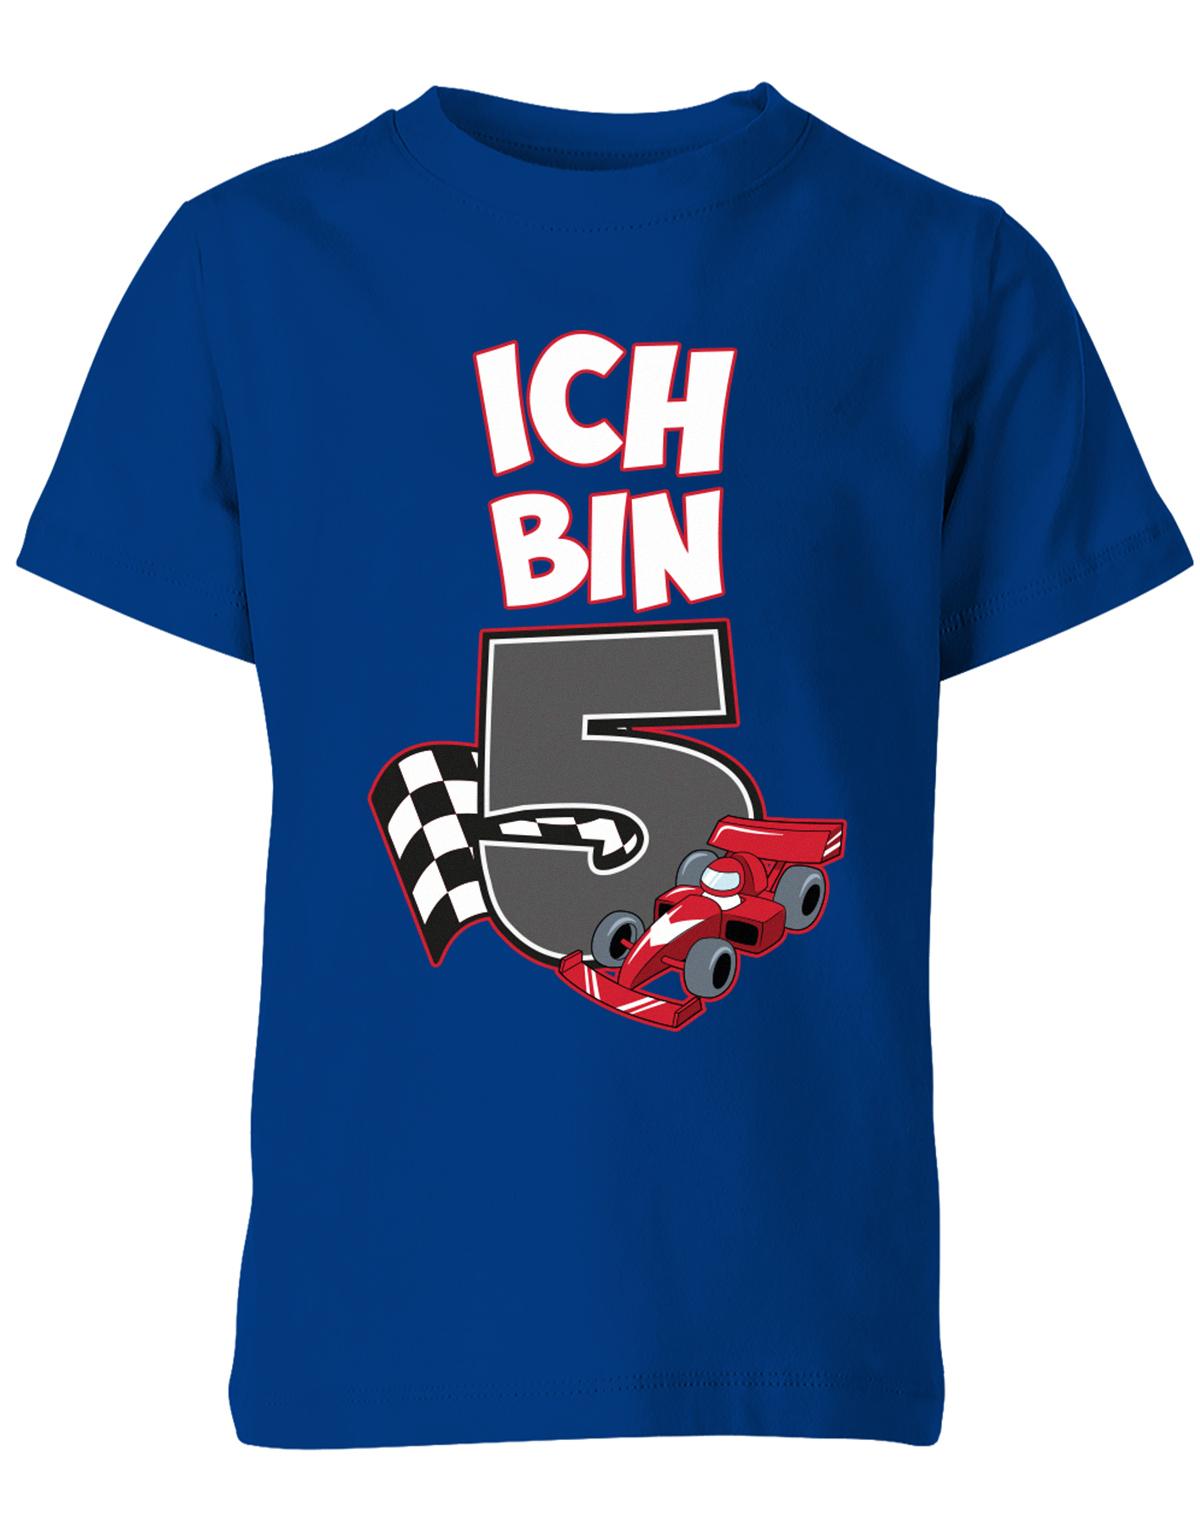 ich-bin-5-autorennen-rennwagen-geburtstag-rennfahrer-kinder-shirt-royalblau